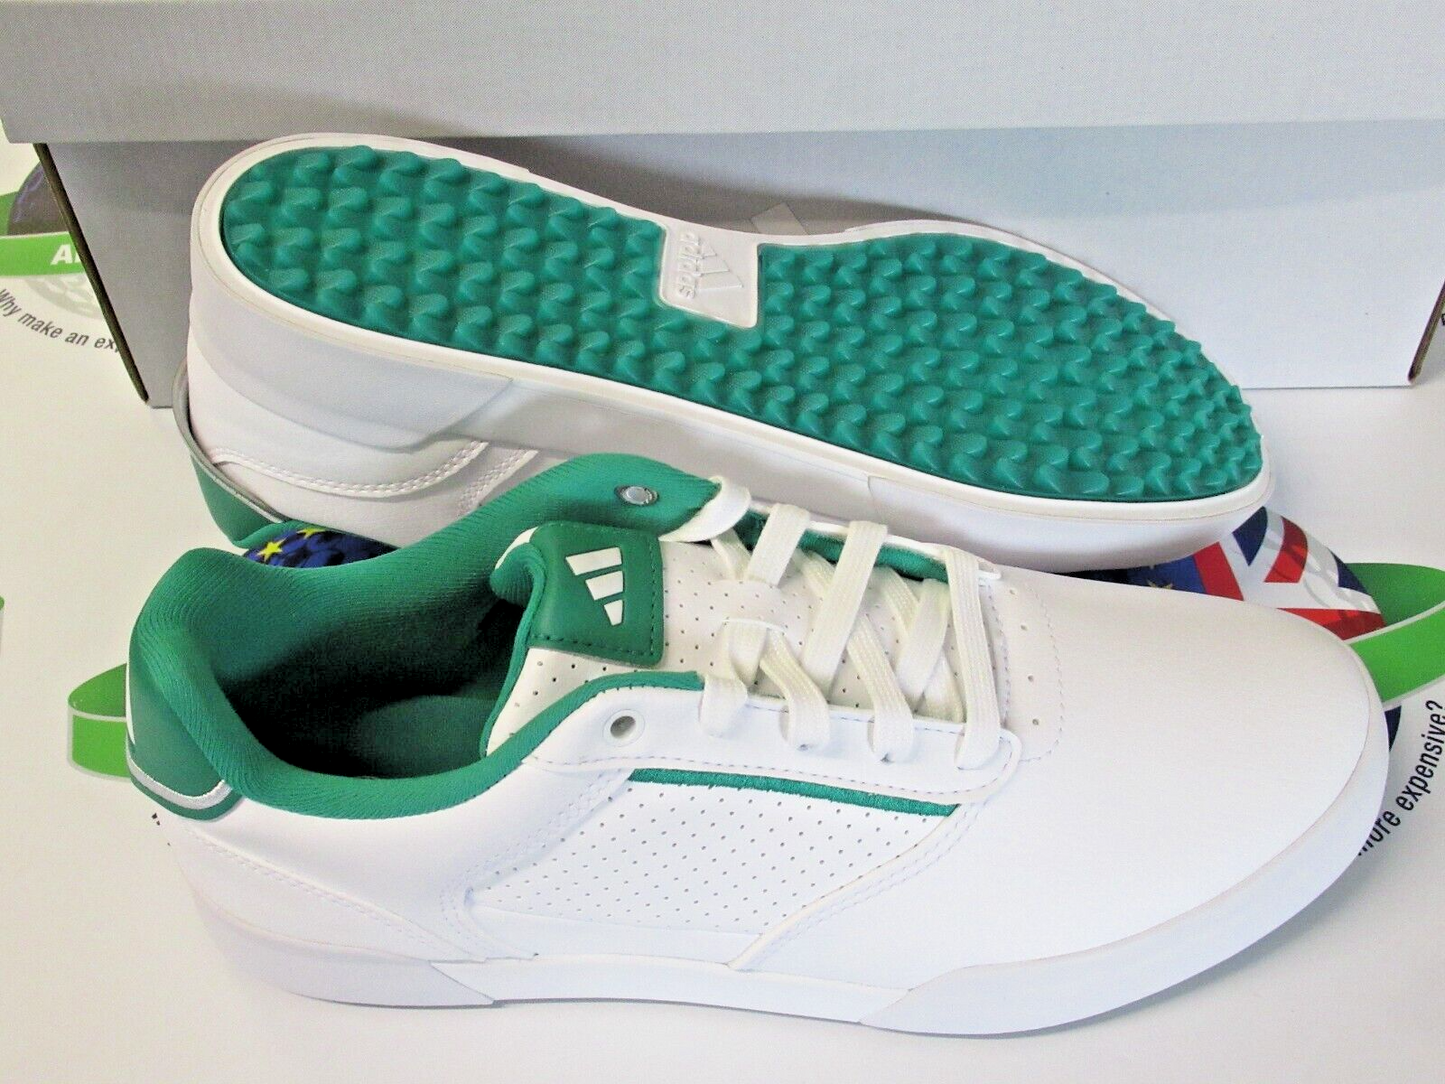 adidas retrocross white/green waterproof golf shoes uk size 7.5 wide